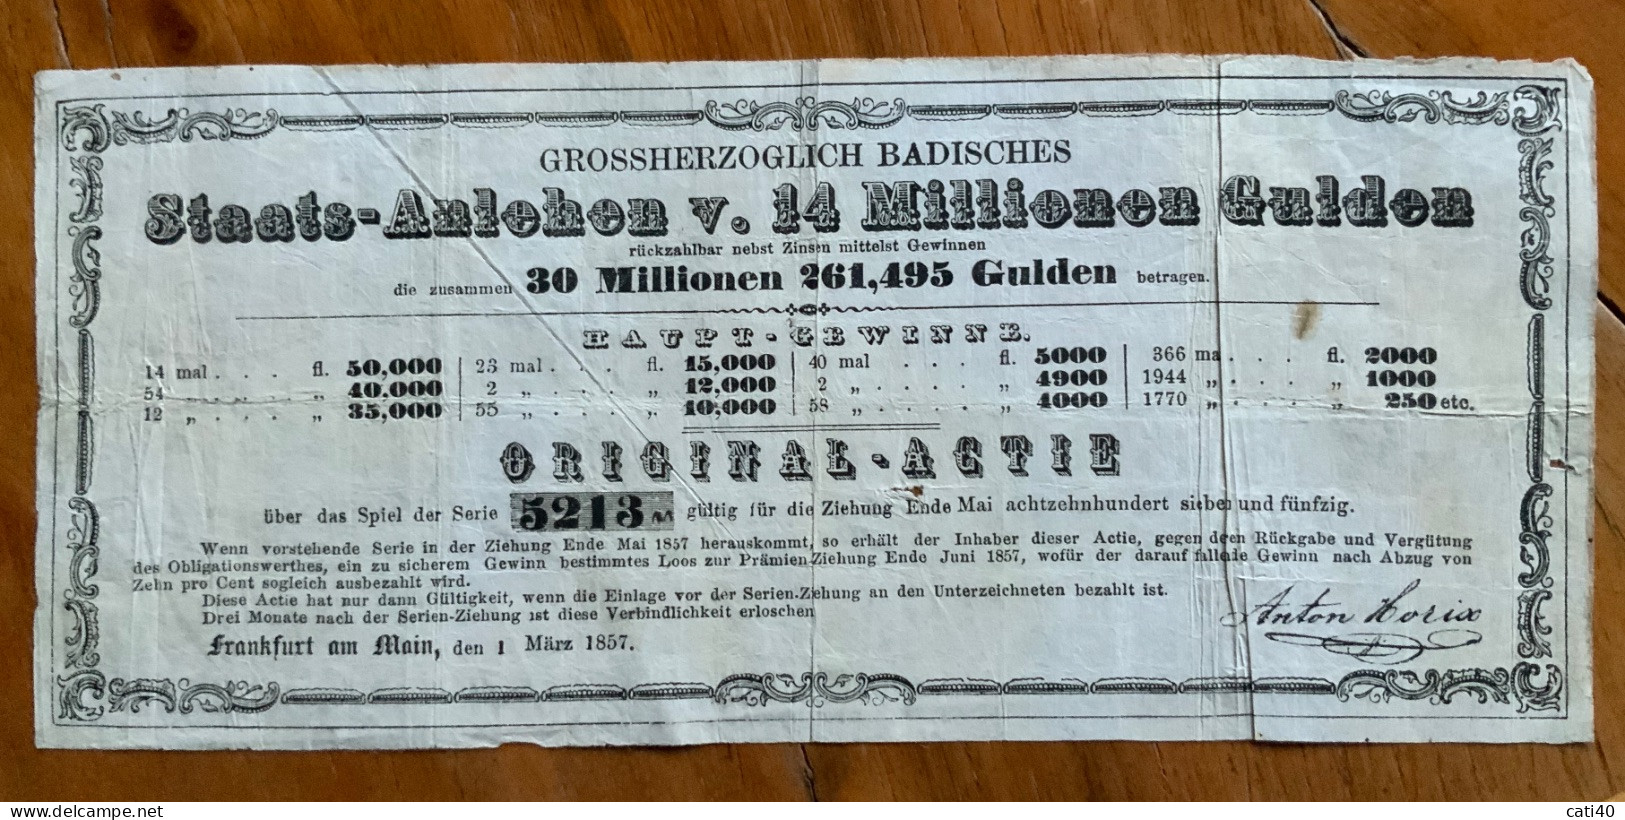 FRANKFURT AM MAIN 1 MARZ 1857 - GROSSHERZOGLICH BADISCHES -  STAATS - ANLEHEN ORIGINAL - ACTIE - 14 MILIONEN GULDEN - Transports